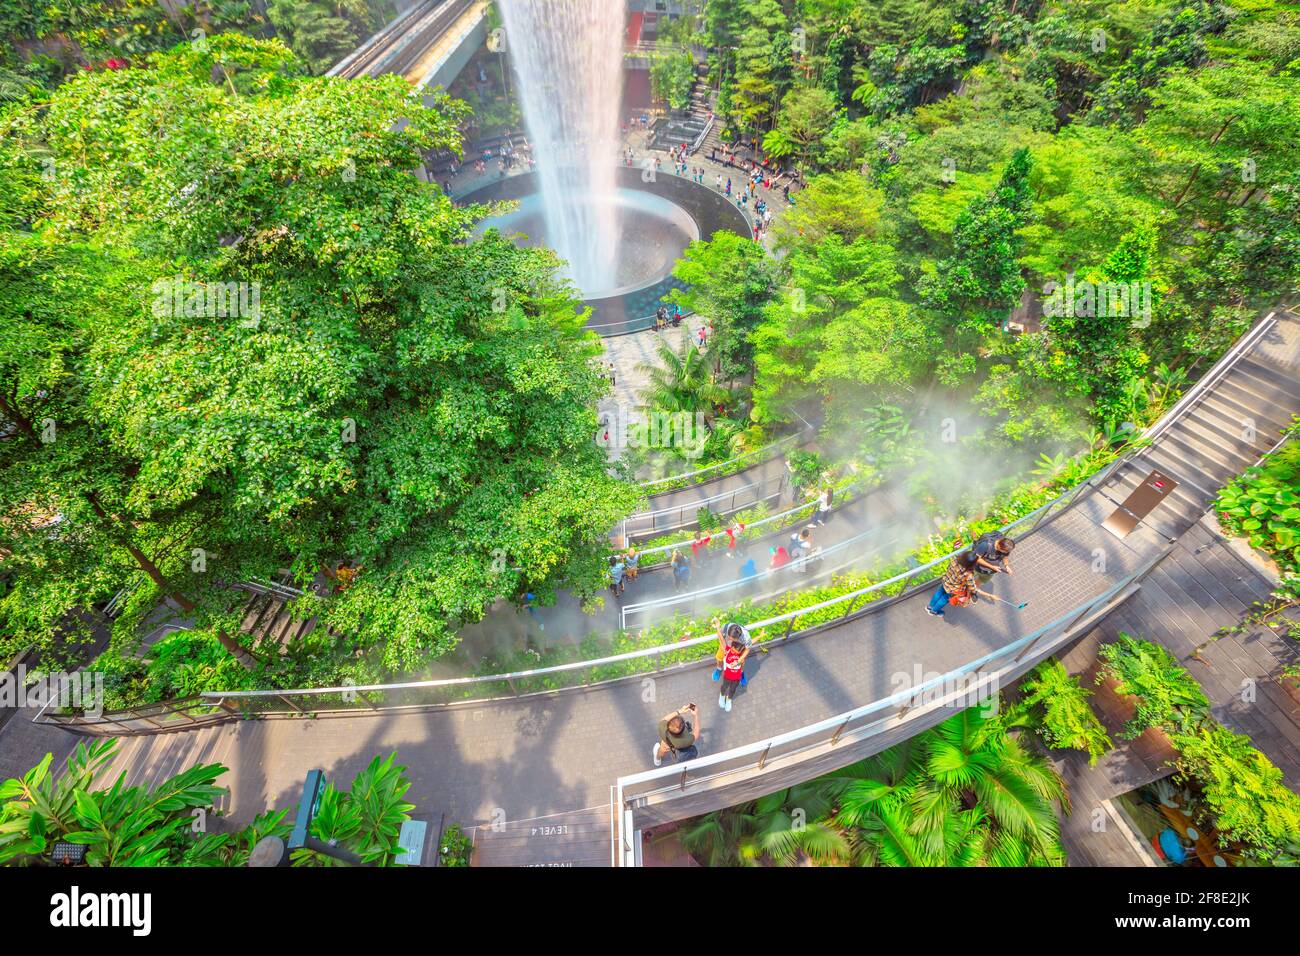 Singapur - 8. Aug 2019: Luftaufnahme der Details von Rain Vortex, dem größten Indoor-Wasserfall der Welt und dem terrassenförmig angelegten Hedge-Labyrinth-Garten im Jewel Airport Stockfoto